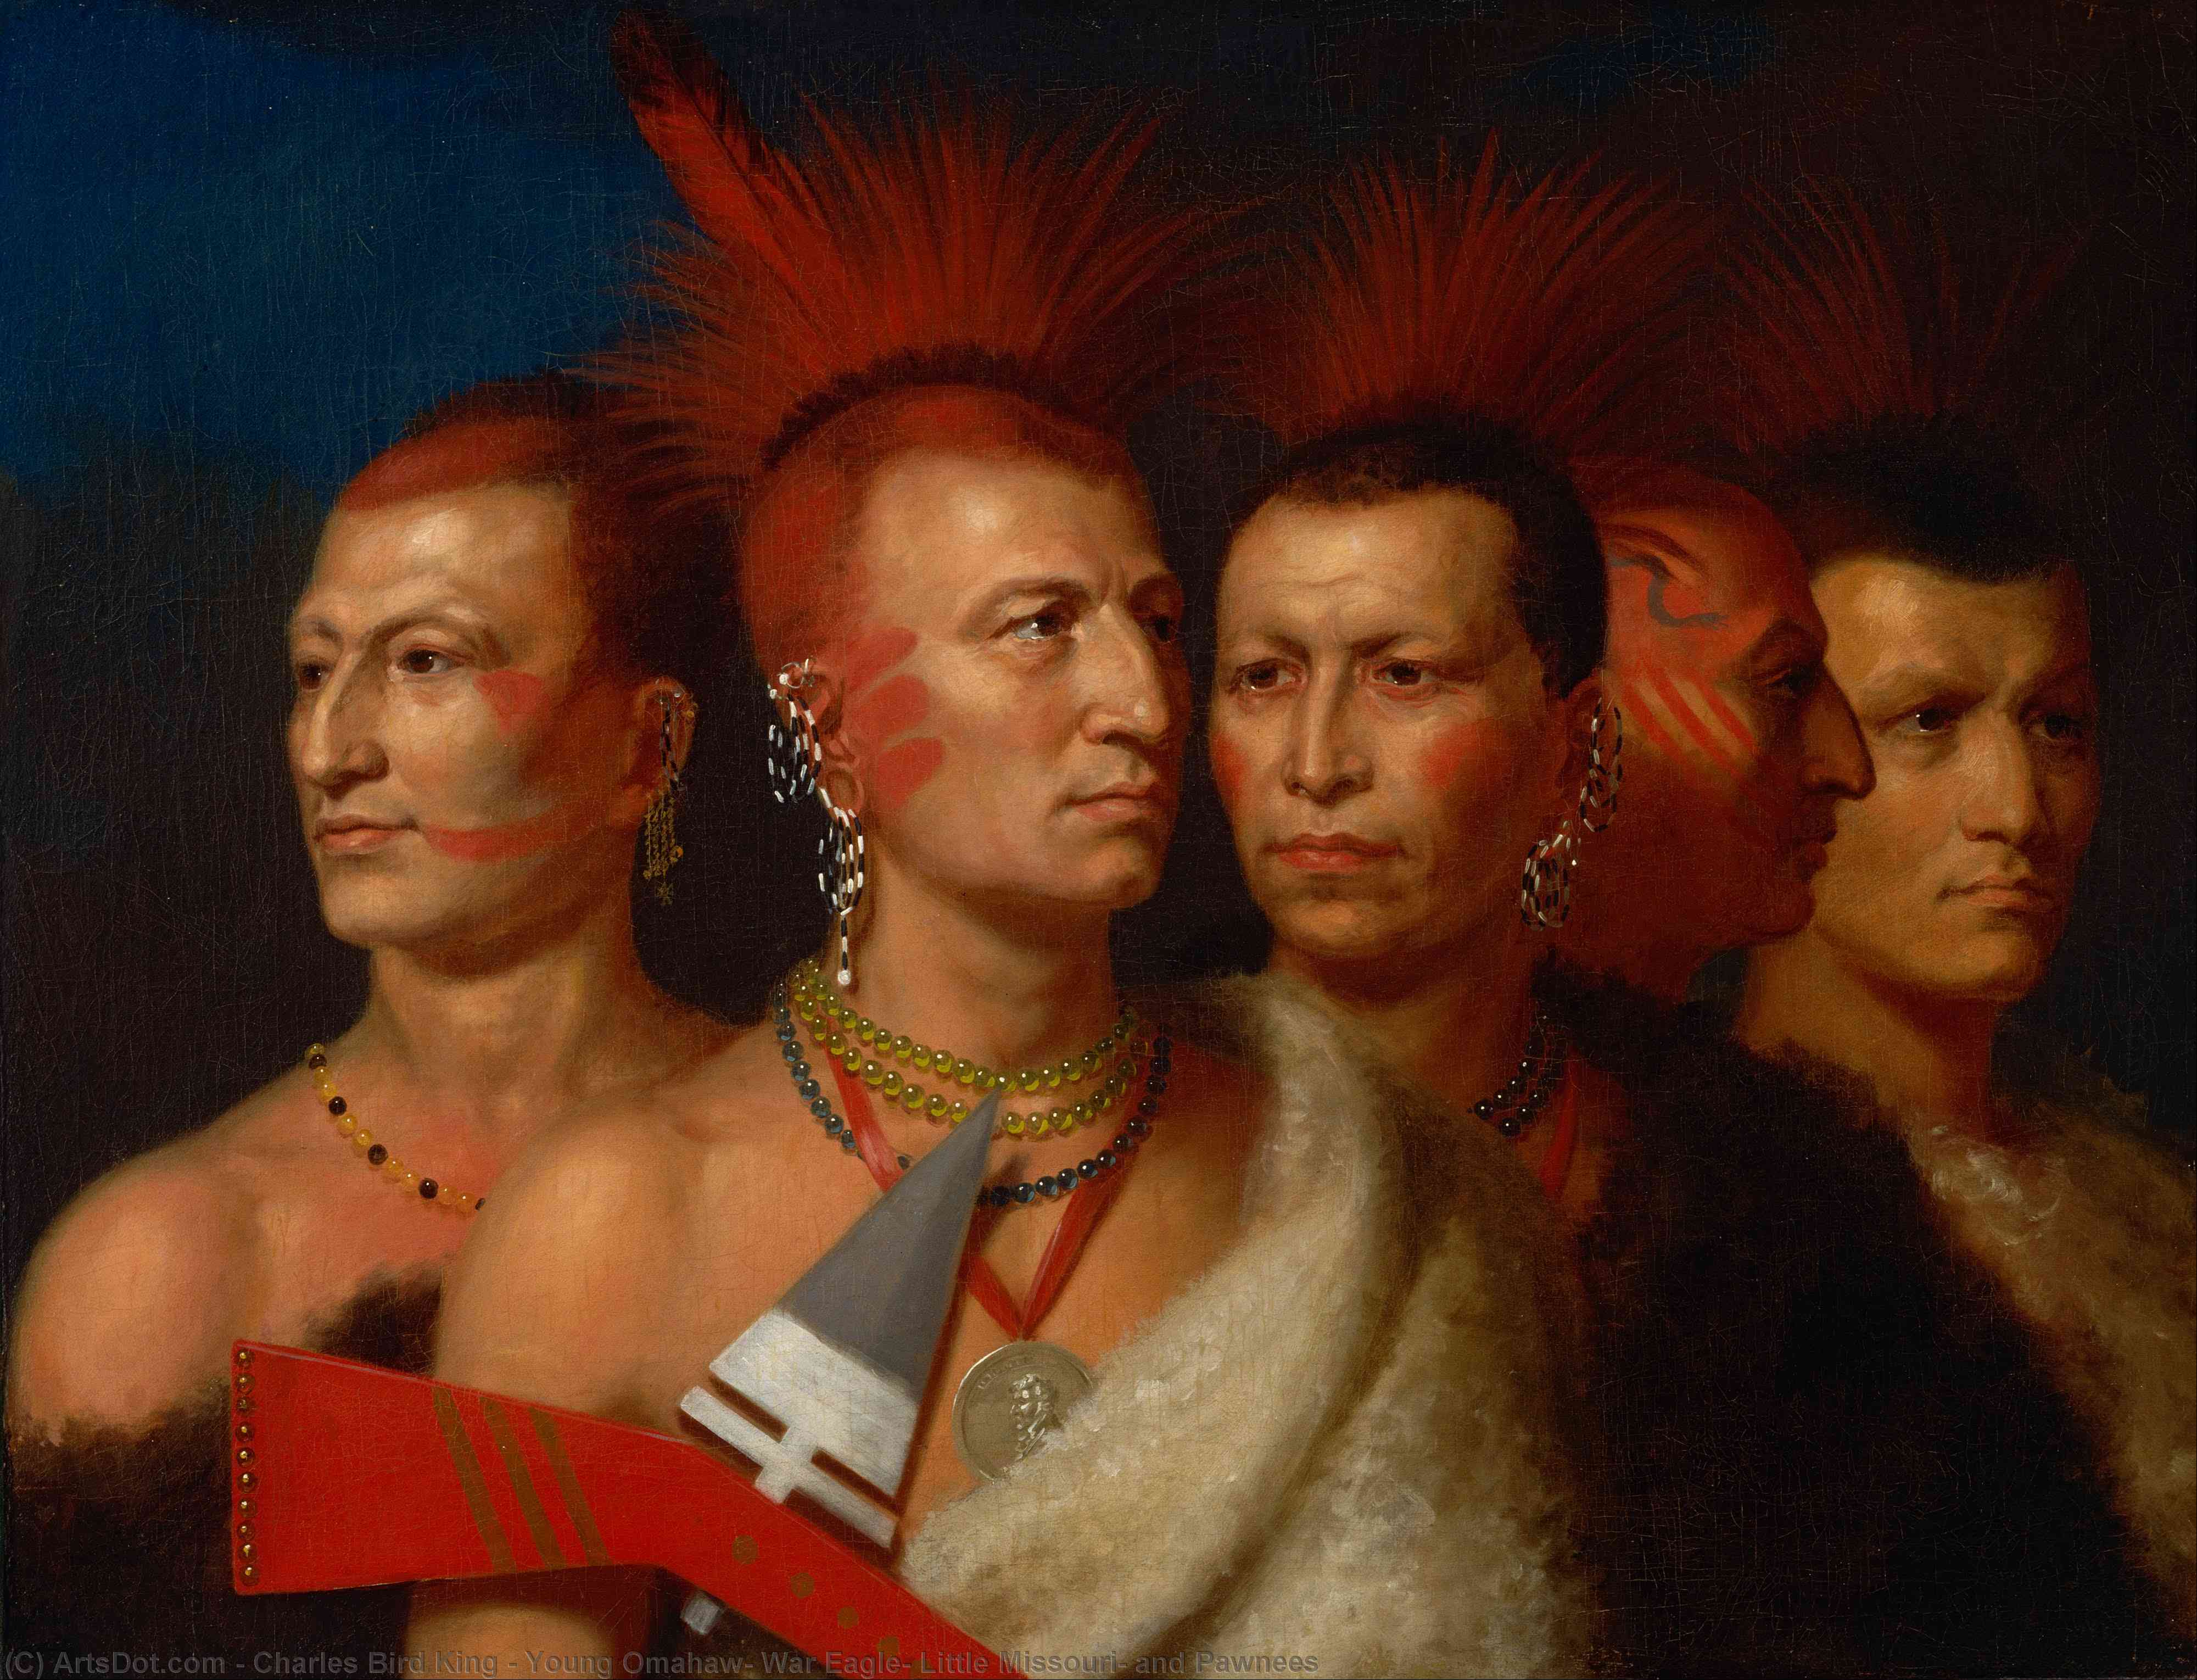 Compre Museu De Reproduções De Arte Young Omahaw, War Eagle, Little Missouri e Pawnees, 1821 por Charles Bird King (1785-1862, United States) | ArtsDot.com